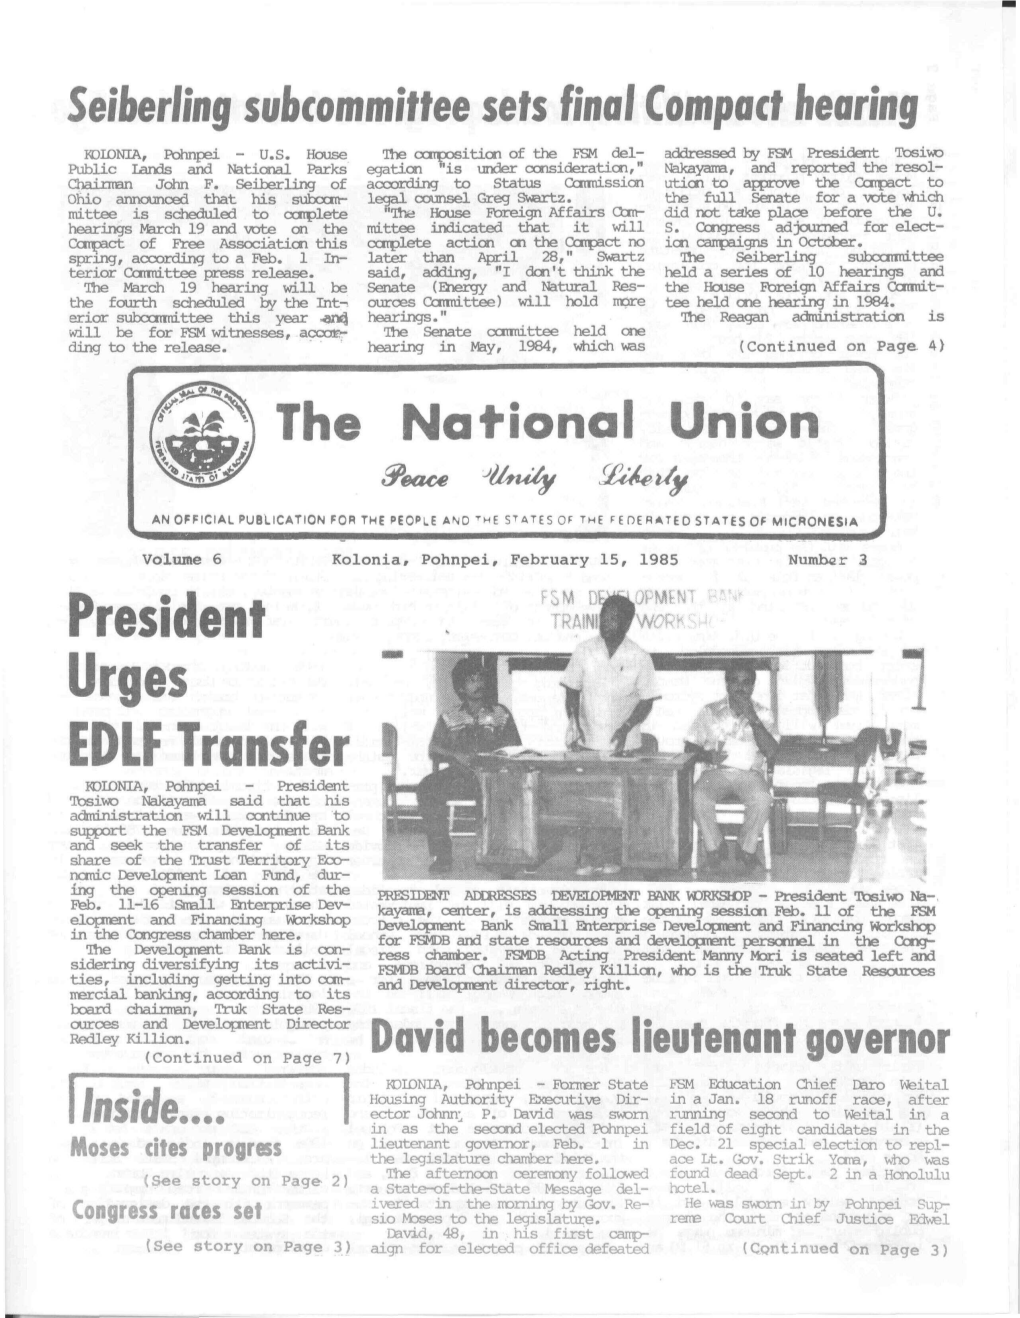 President EDLF Transfer